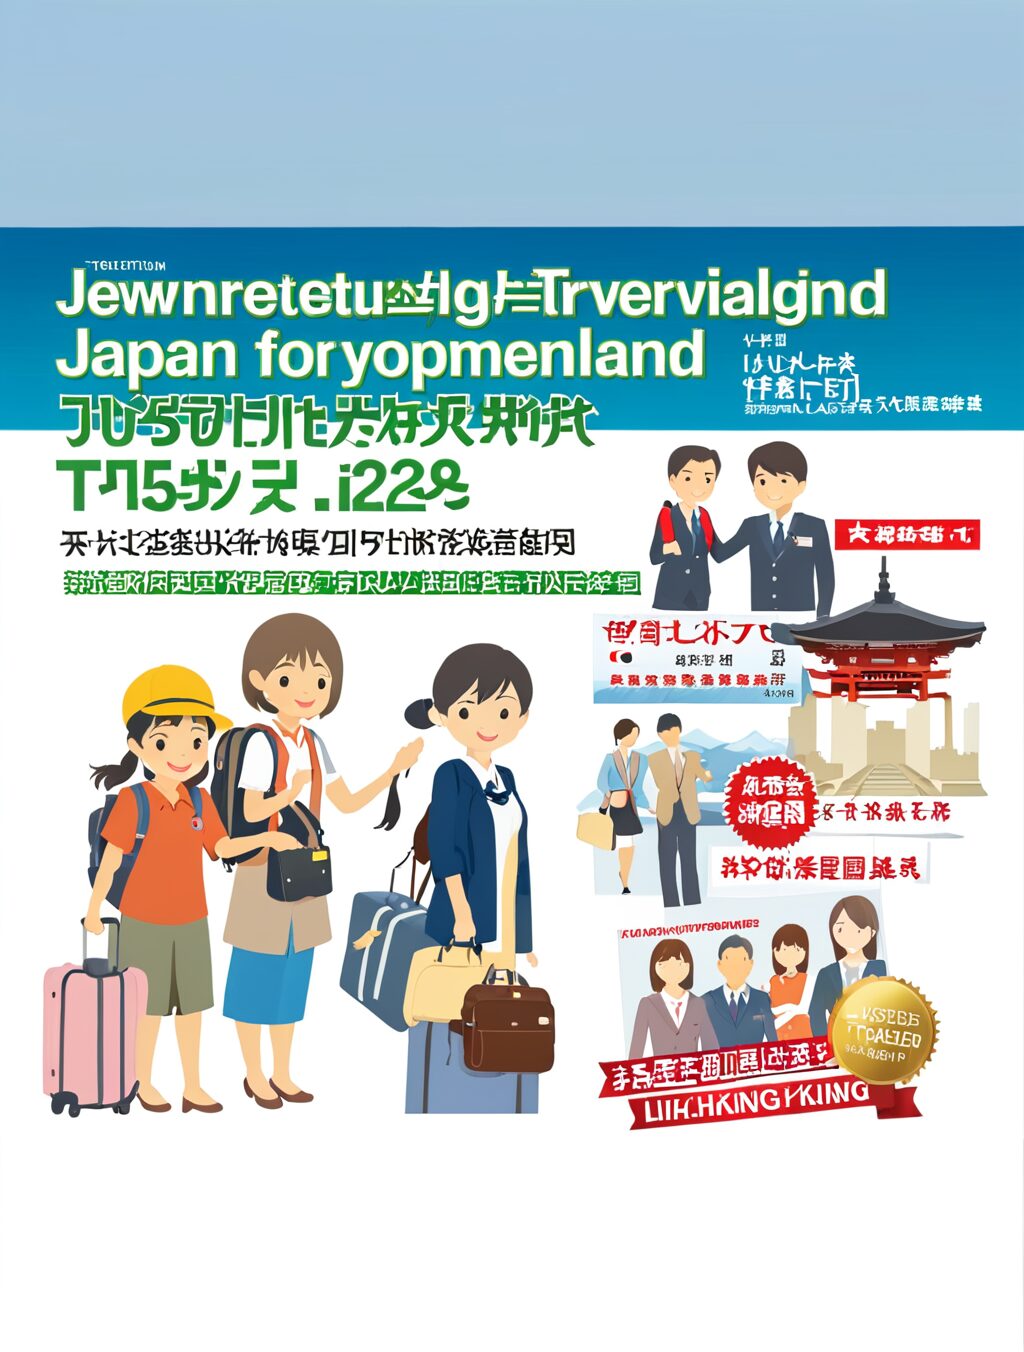 japan trusted traveler program lihkg